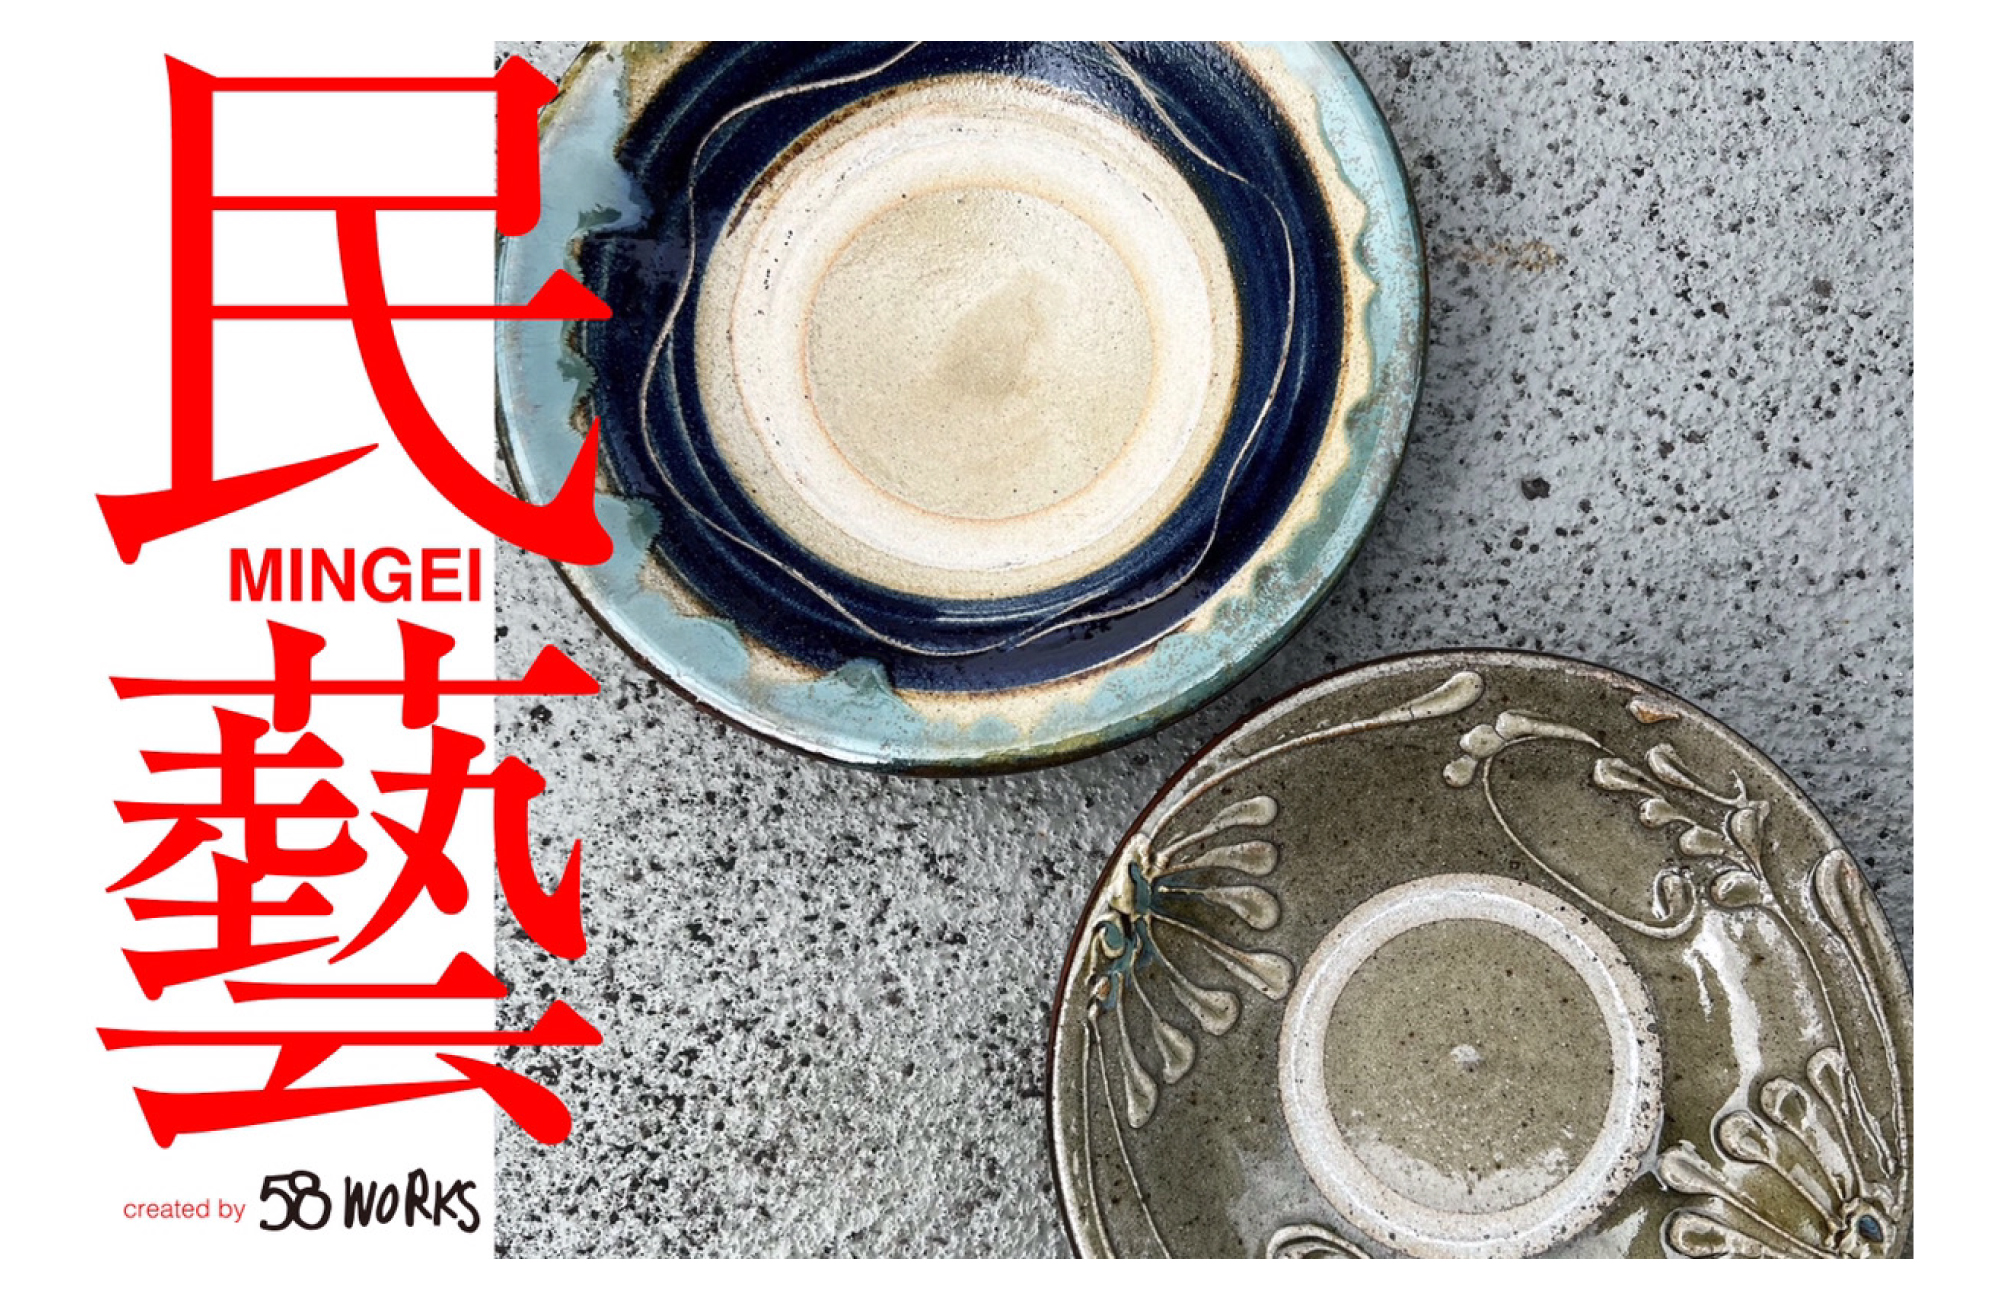 日本の国内にはその地域でしかない風習や習慣が沢山あり、人々の生活に根付き、発展してきました。

その一つに〈 民藝 〉があります。

民藝 は柳宗悦氏が作った言葉です。日本では地域ごとにその地で作られた手仕事の生活用品が多数あります。

その中でも最近では陶器や磁器に注目が集まり各地域で人気作家がいるほど注目を浴びています。

今回のJumble Tokyoでは沖縄のやちむんを国内外広めた中目黒の『58WORKS』様のディレクションの元、

生活によりフォーカスした “モダンライフスタイル“ の新たな解釈の 民藝 を提案します。